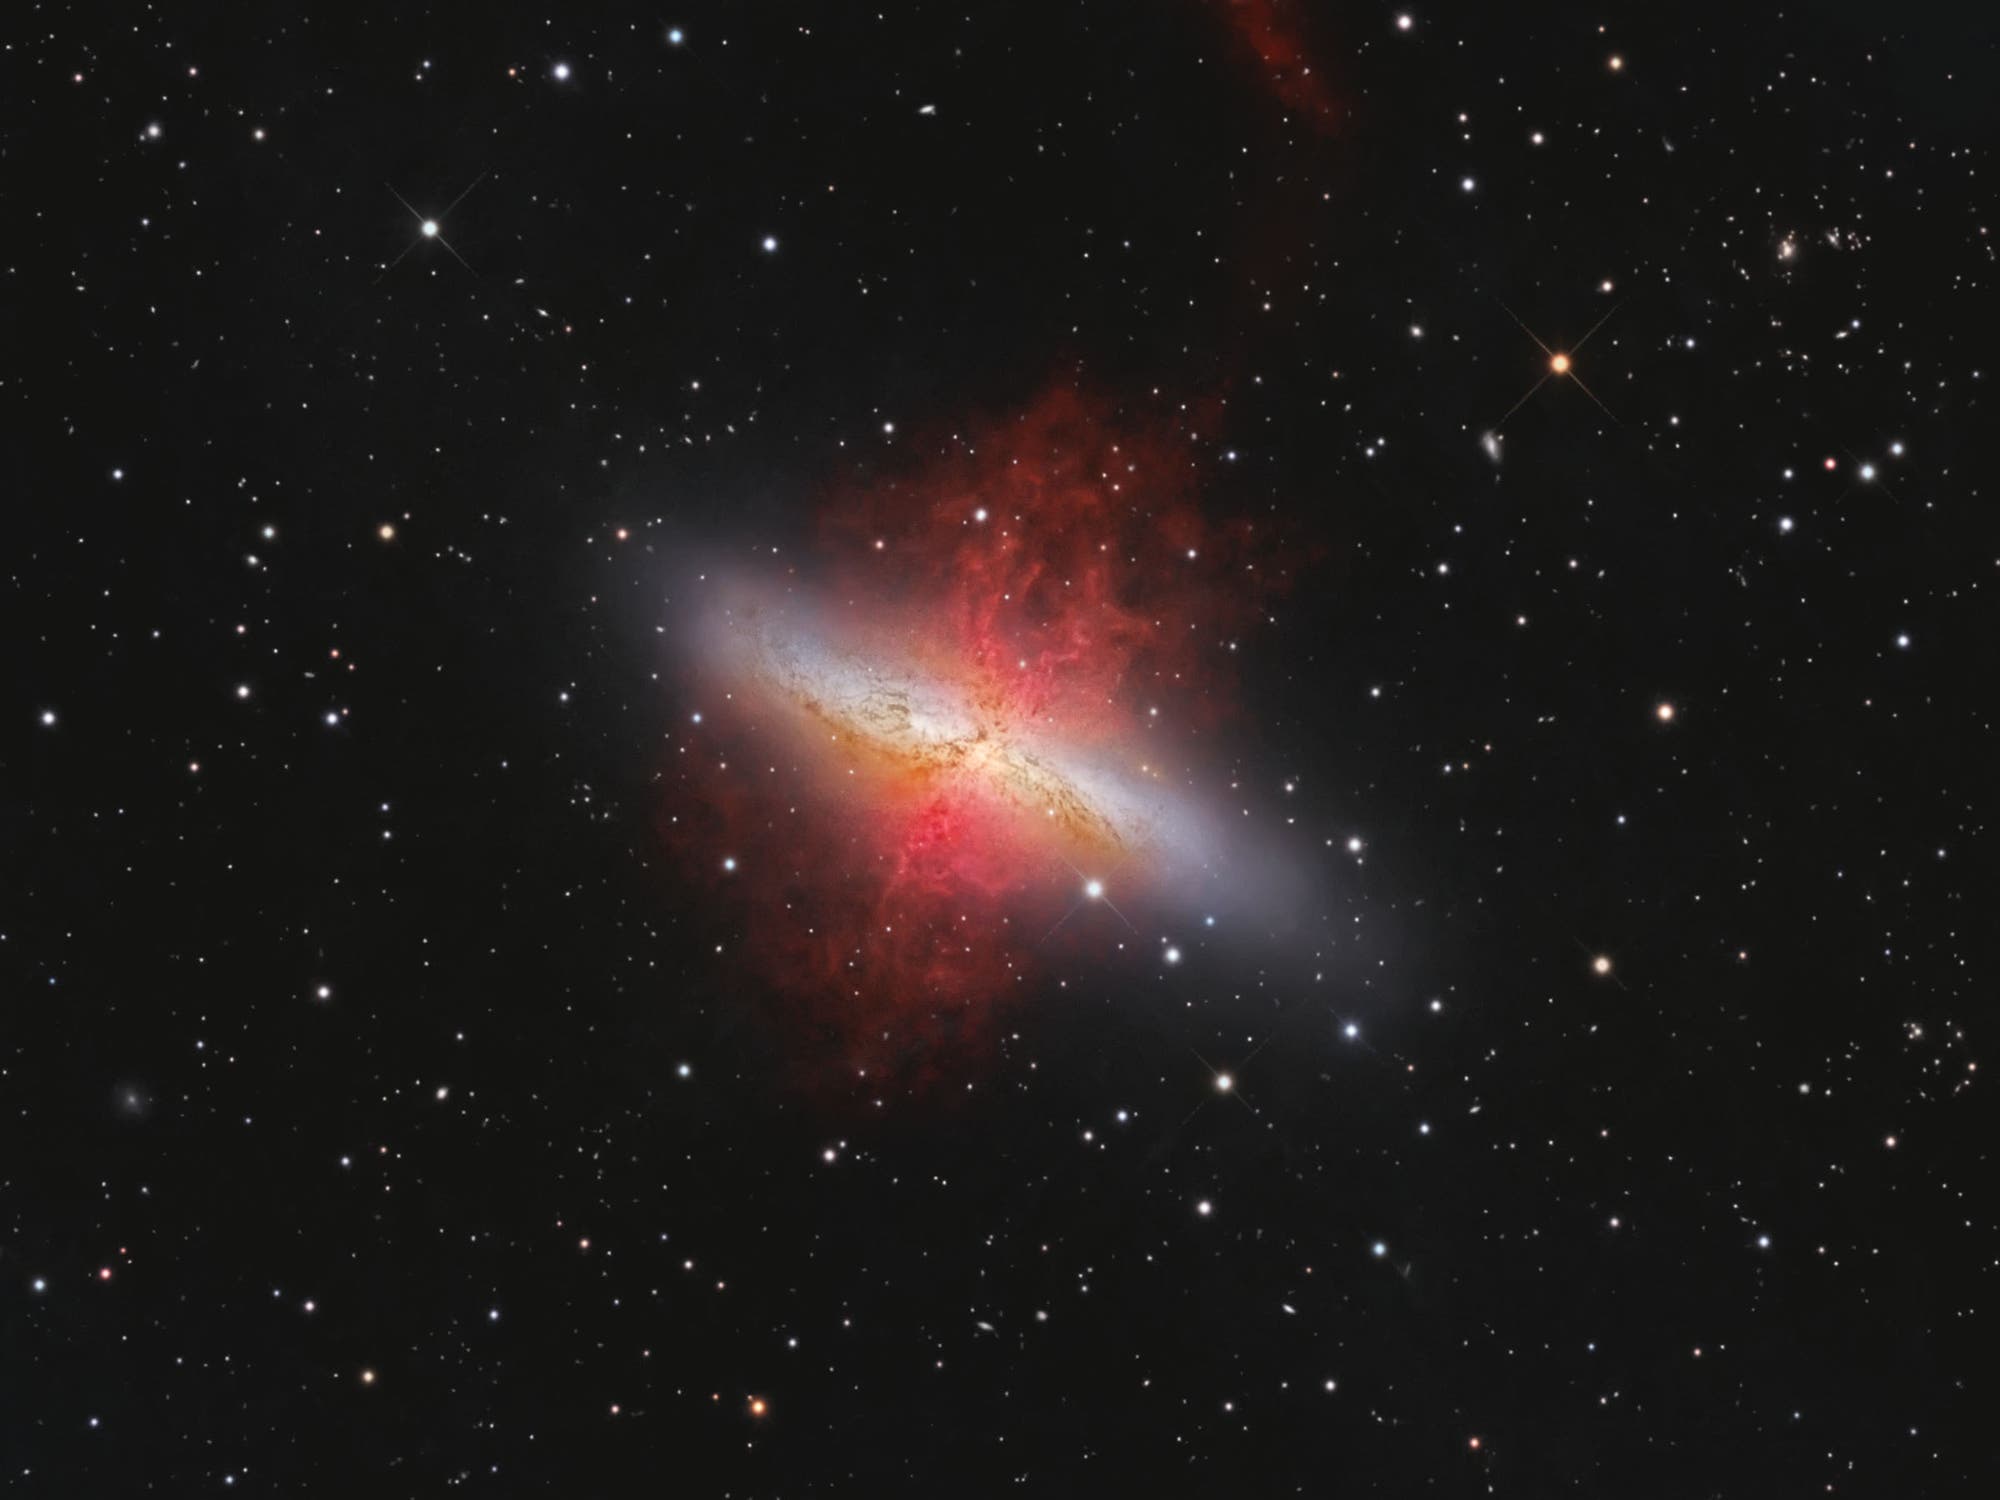 Starburstgalaxie Messier 82